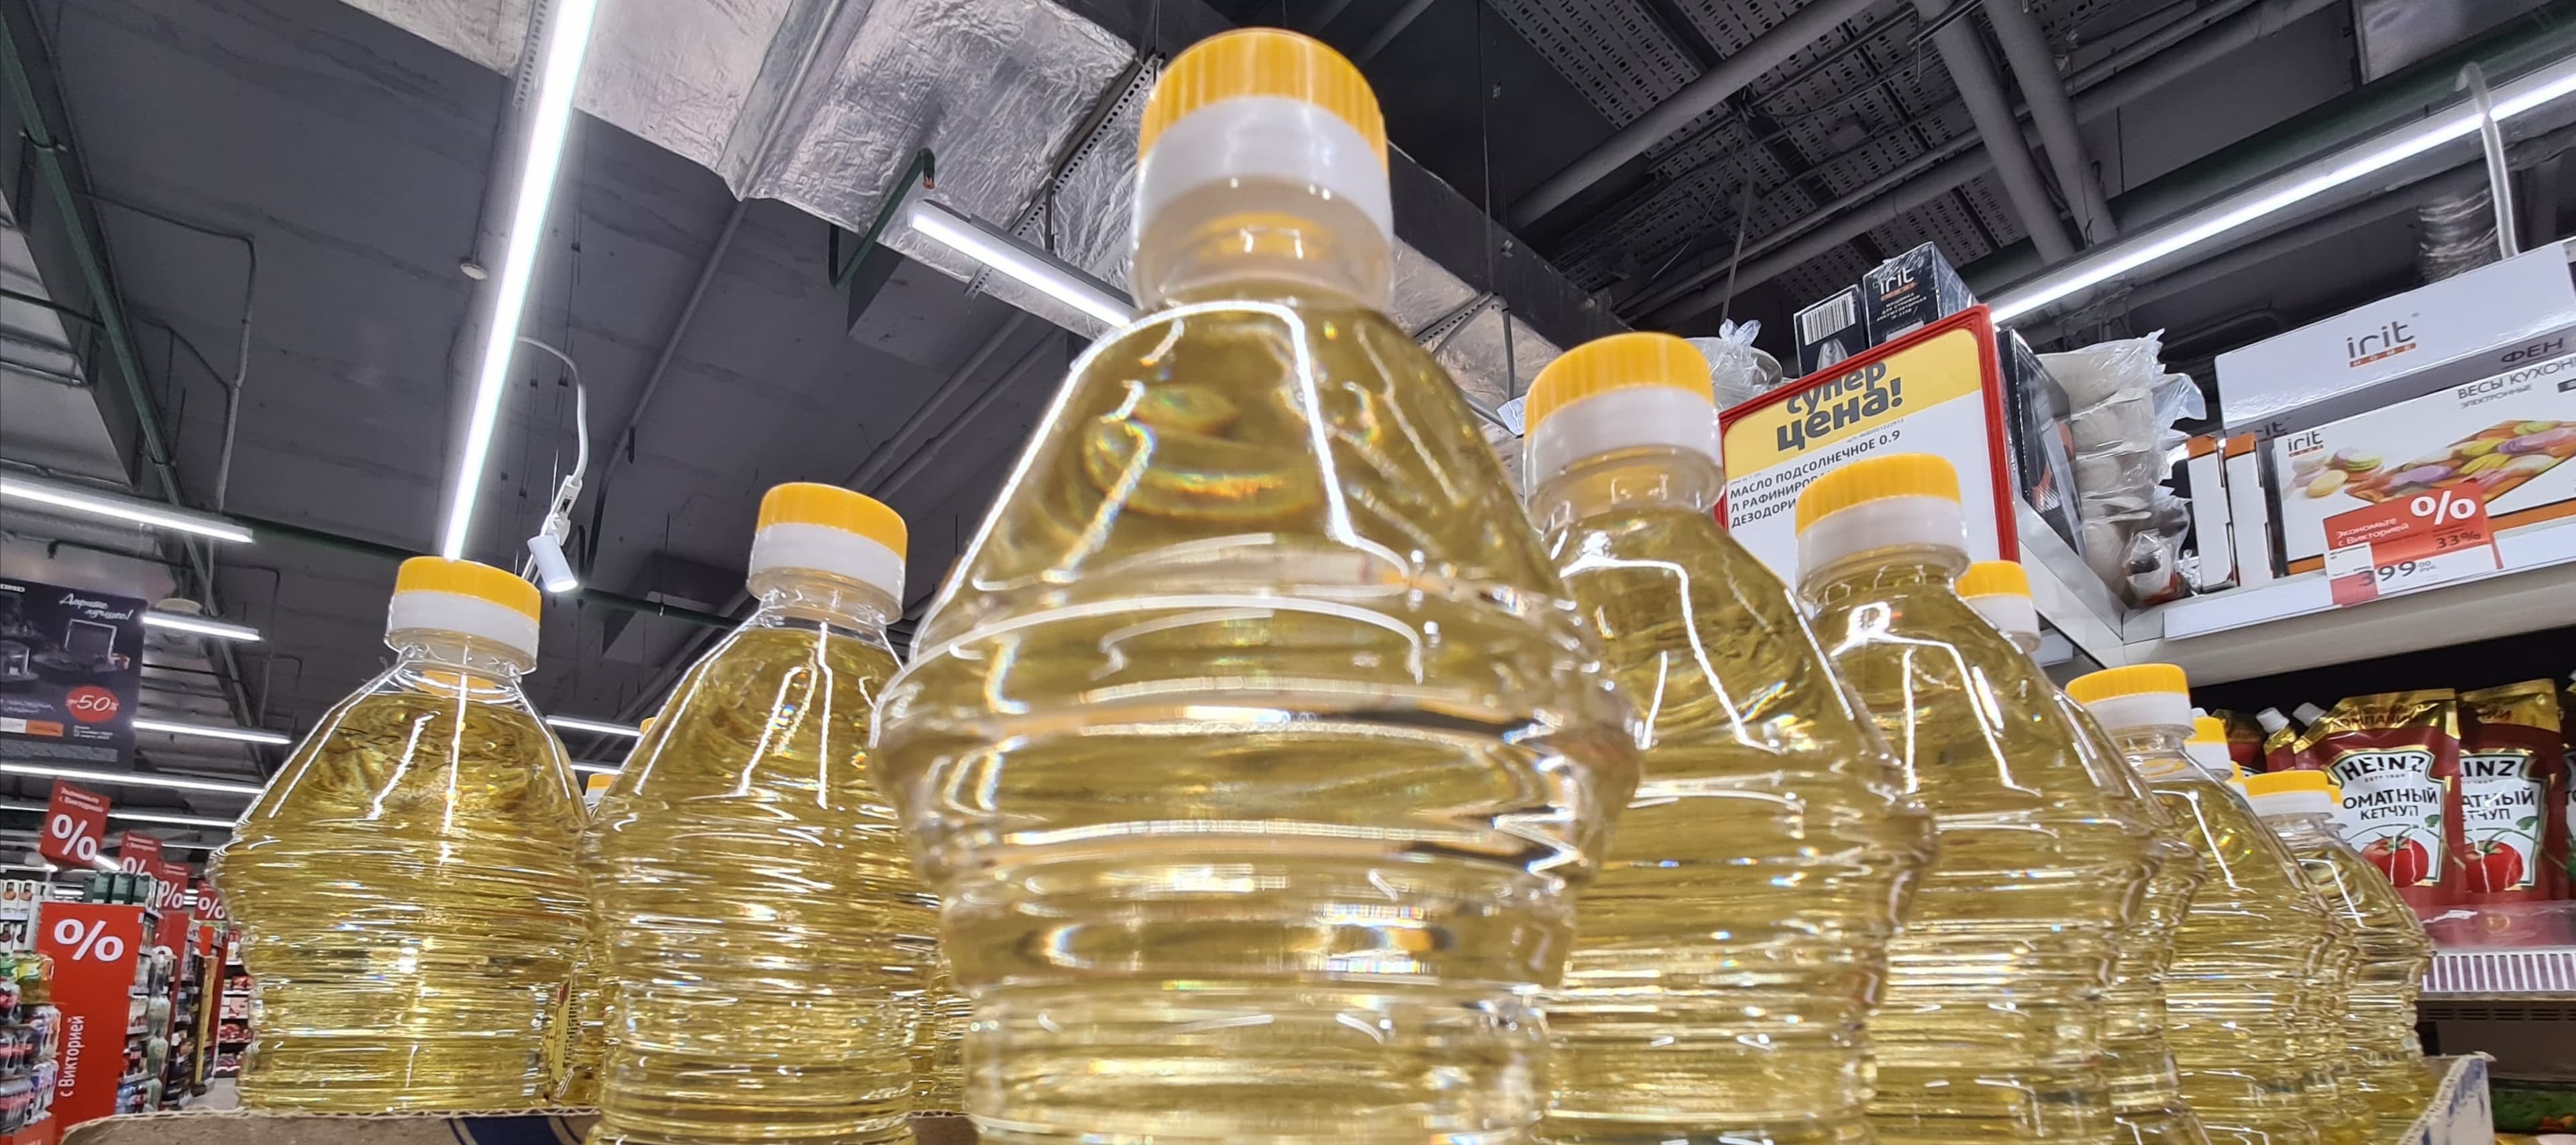 Фото новости: "Роскачество назвало подсолнечное масло одним из самых качественных товаров в России"